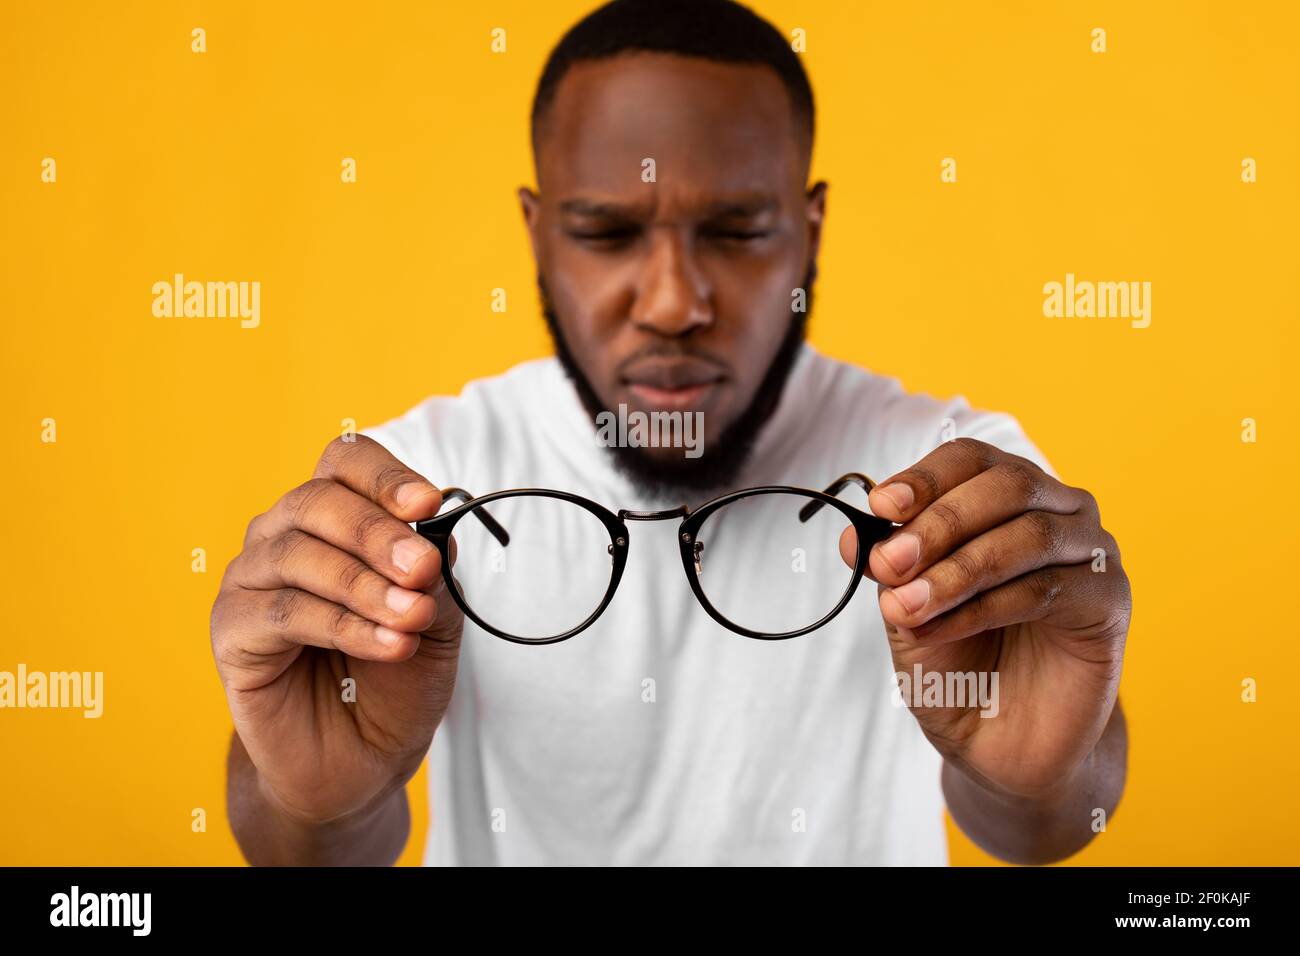 Hombre sosteniendo gafas escillando ojos con mala vista, fondo amarillo Foto de stock